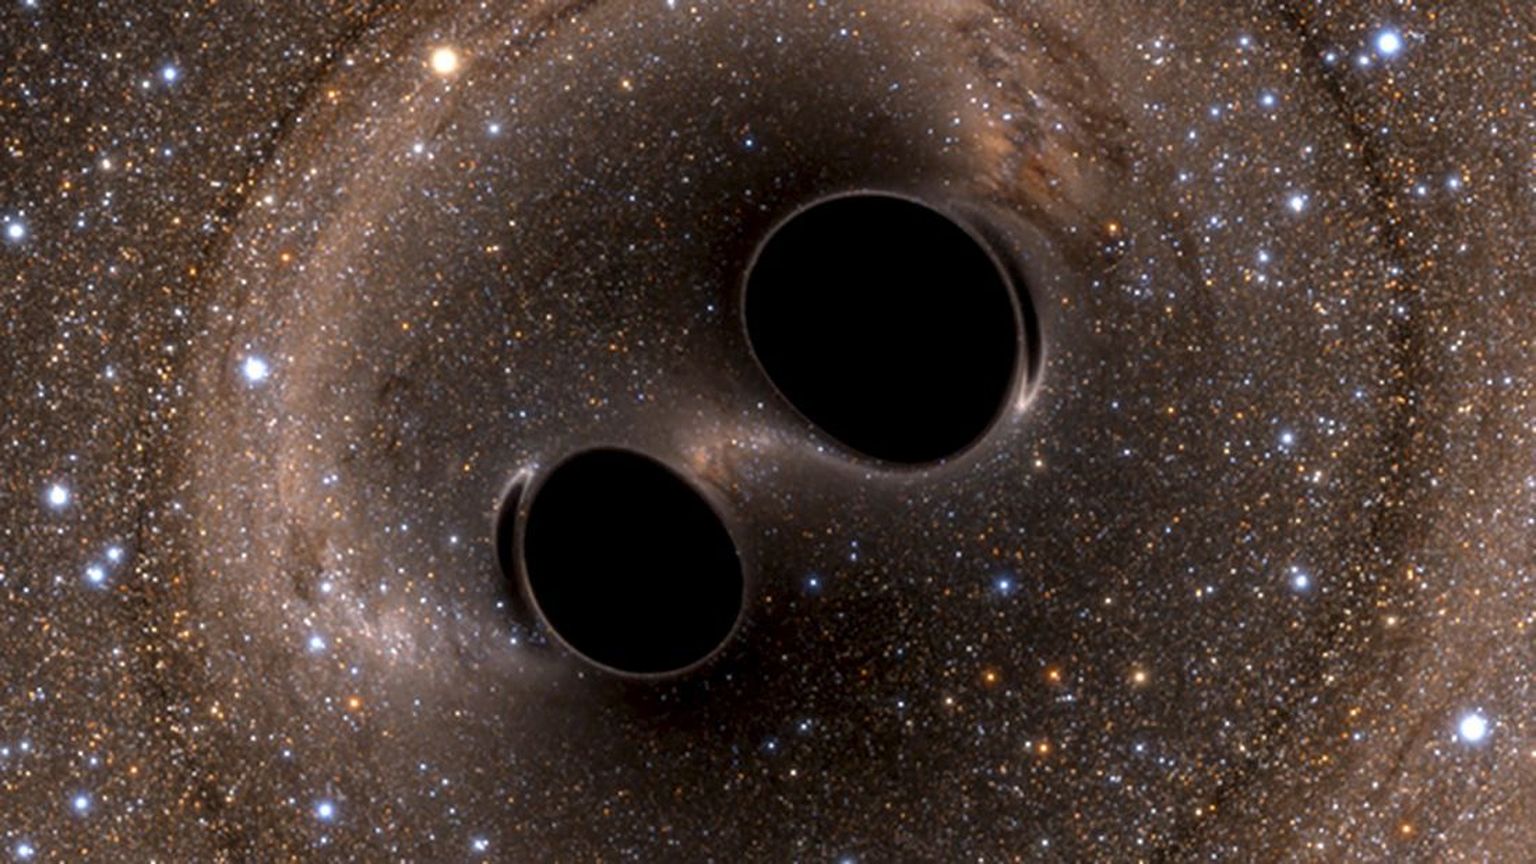 Kunstniku kujutis mustade aukude kokkupõrkest. Tegemist on ülisuure energiaga kosmilise sündmusega, mille tagajärjel tekivad Maalt registreeritavad gravitatsioonilained.